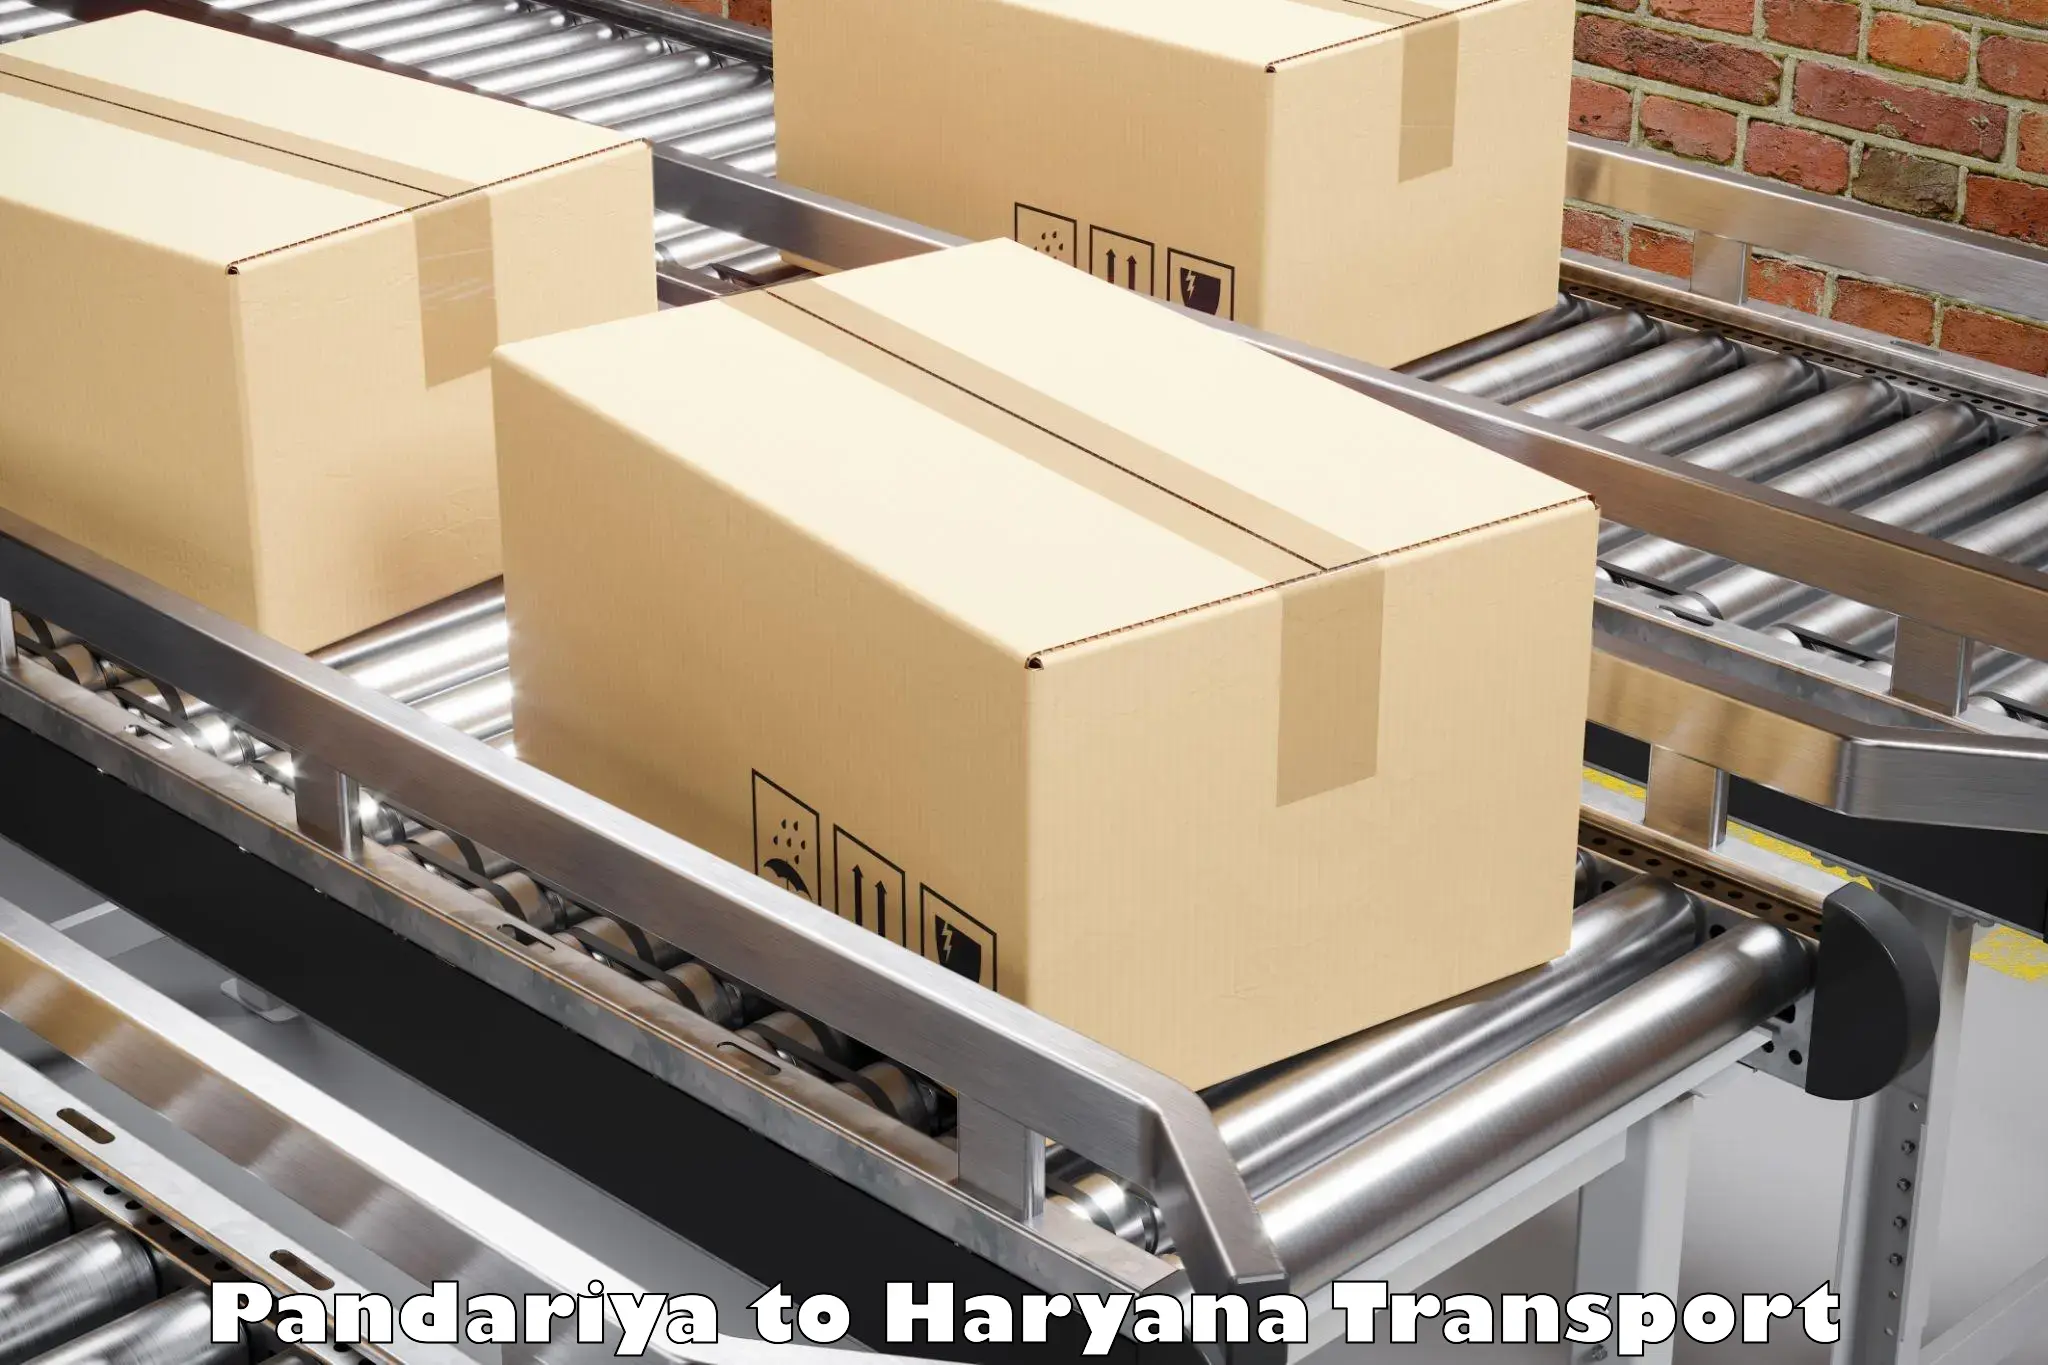 Cargo transportation services in Pandariya to Hansi